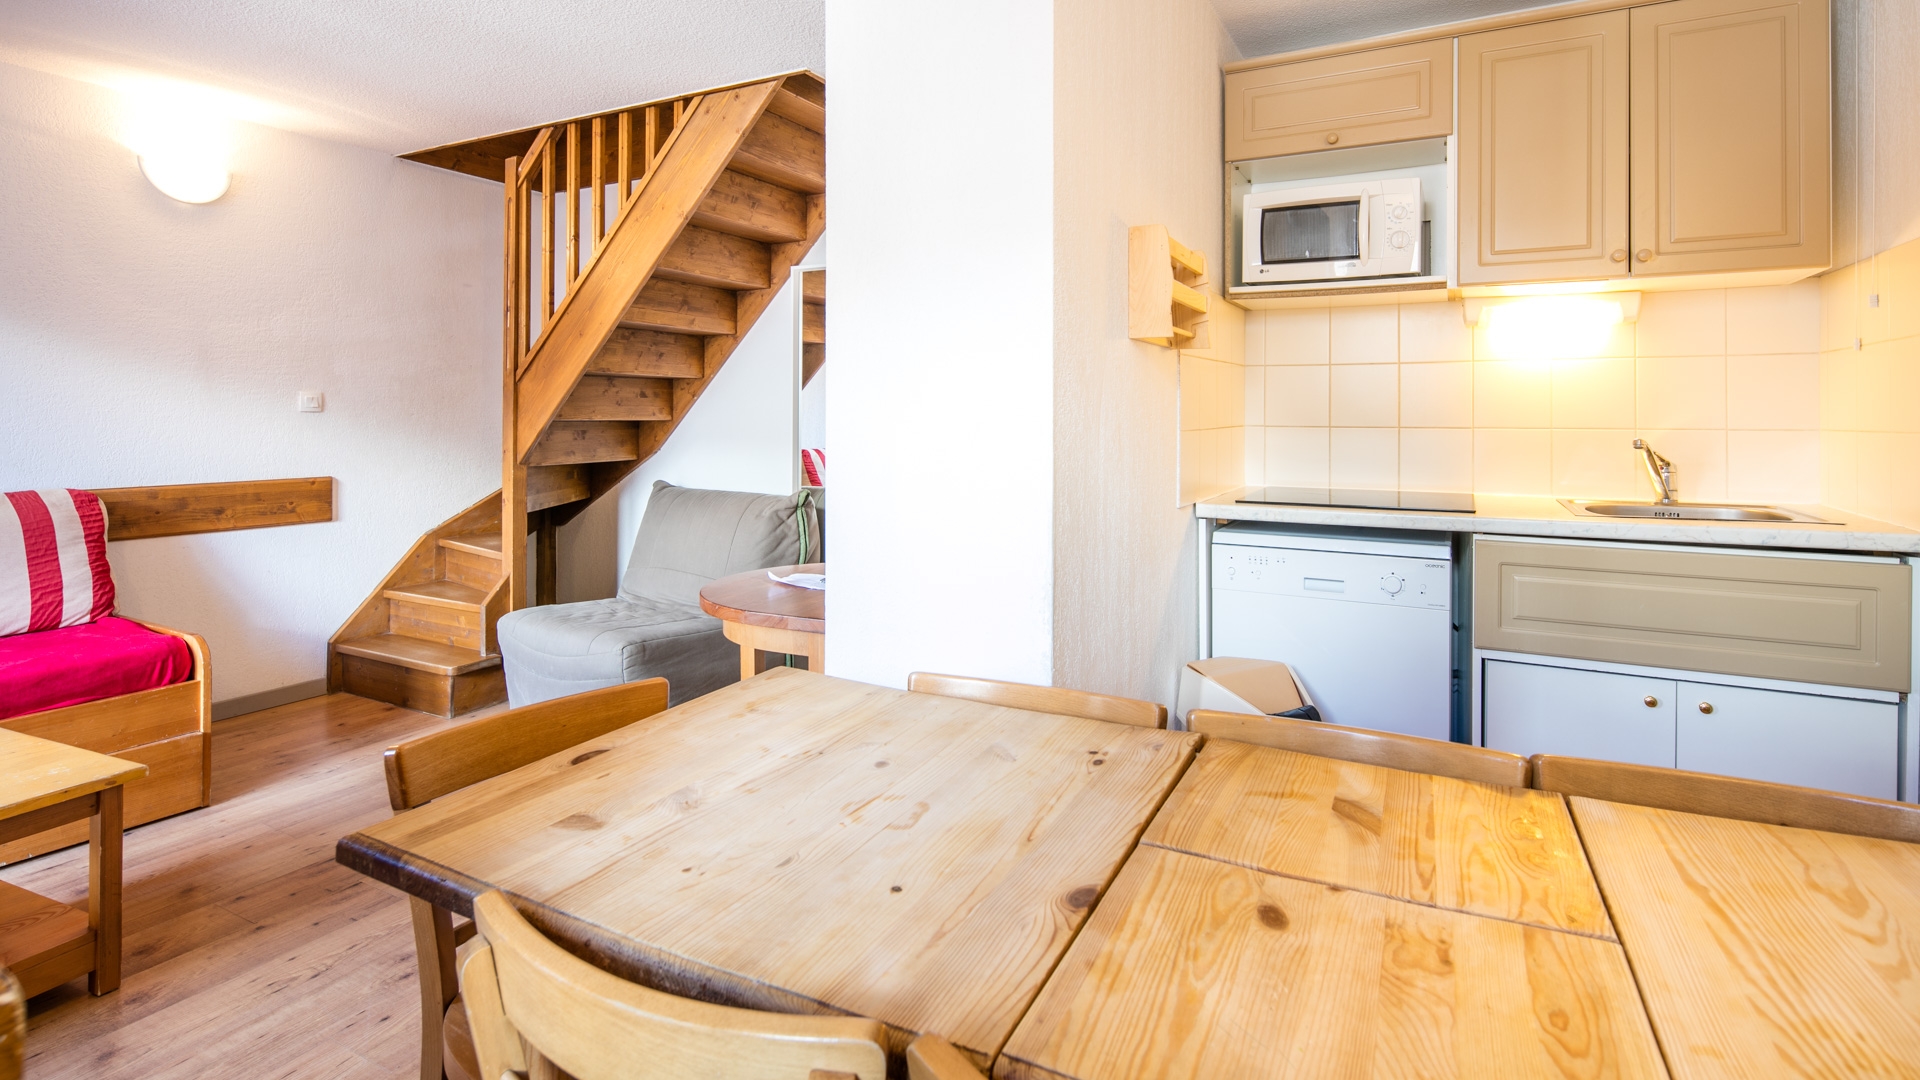 Le Hameau de Valloire: Appartement für 7 Personen - Essbereich mit Küchenzeile (Beispiel)